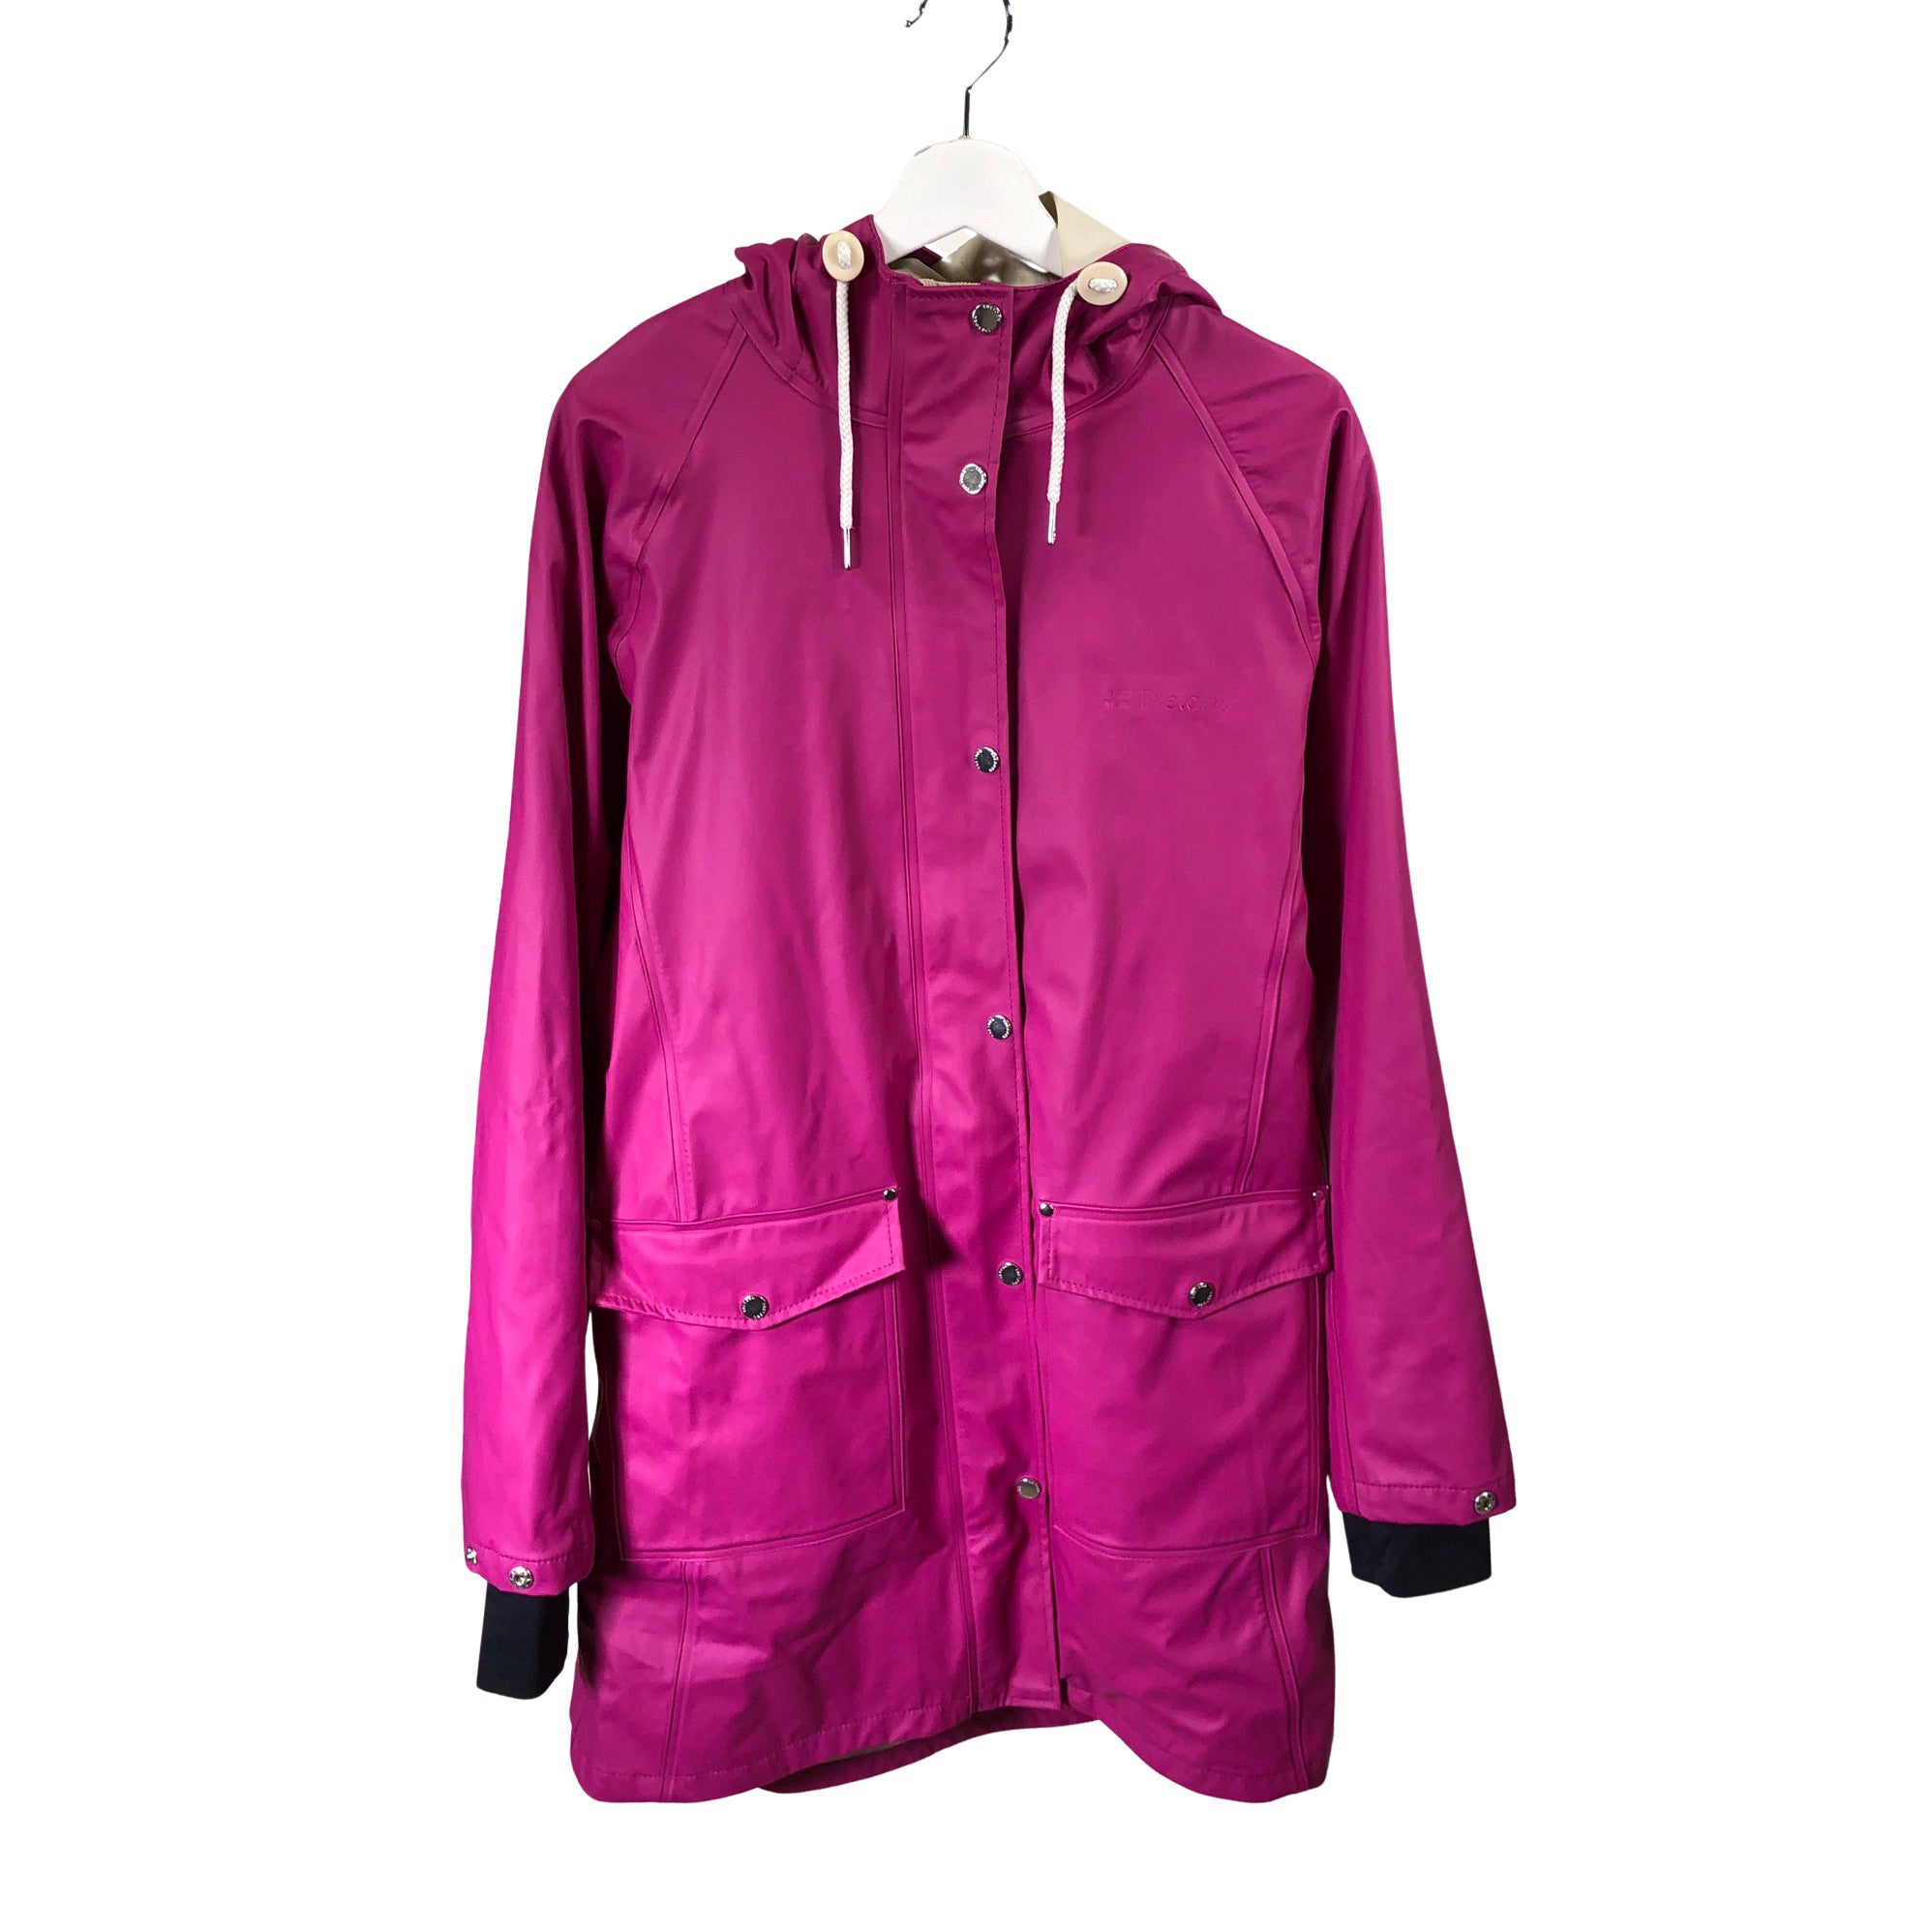 Women's Tretorn Rain jacket, size 42 (Purple) | Emmy